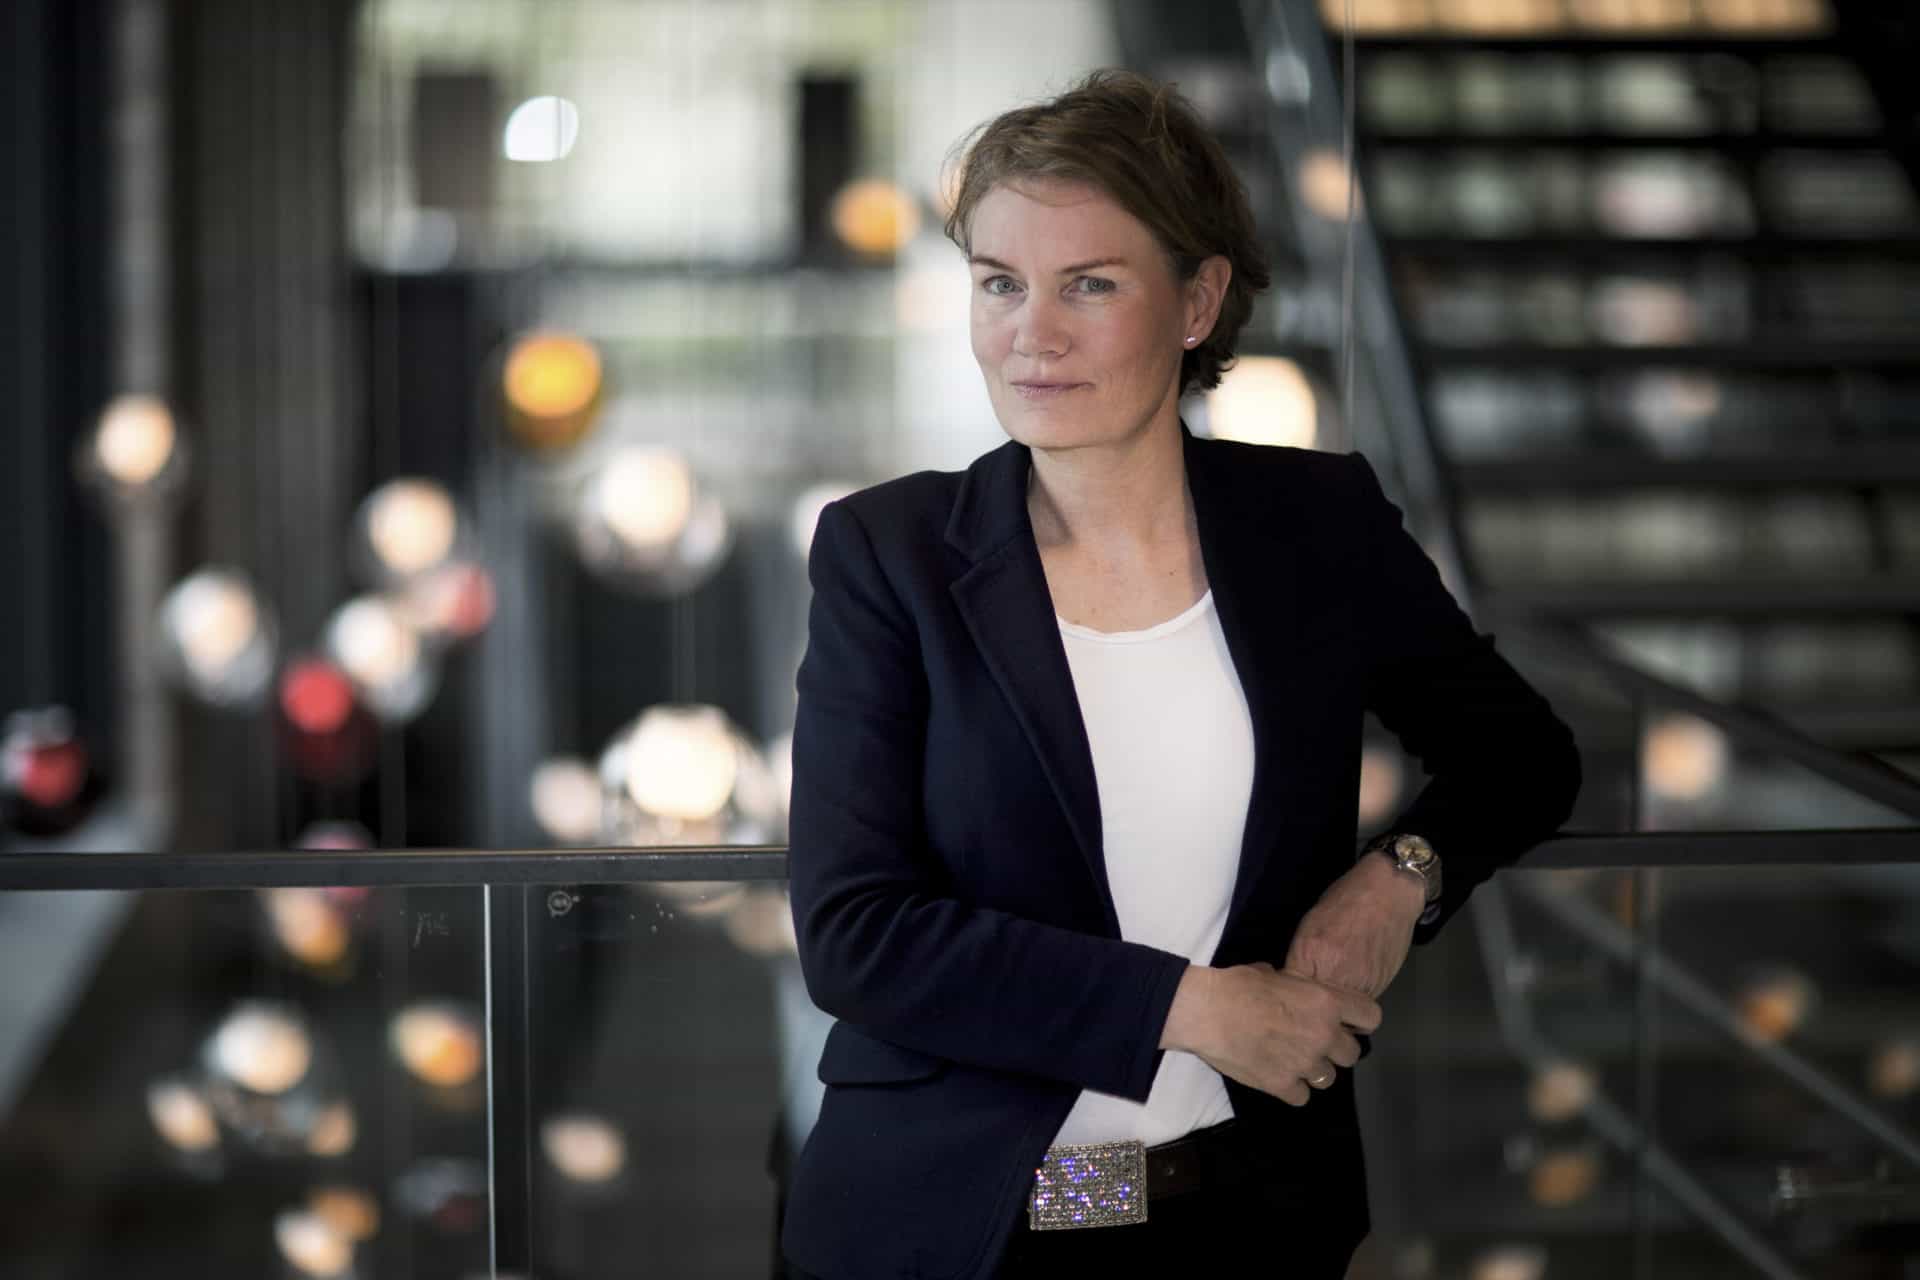 Professor ved BI, Caroline Dale Ditlev-Simonsen